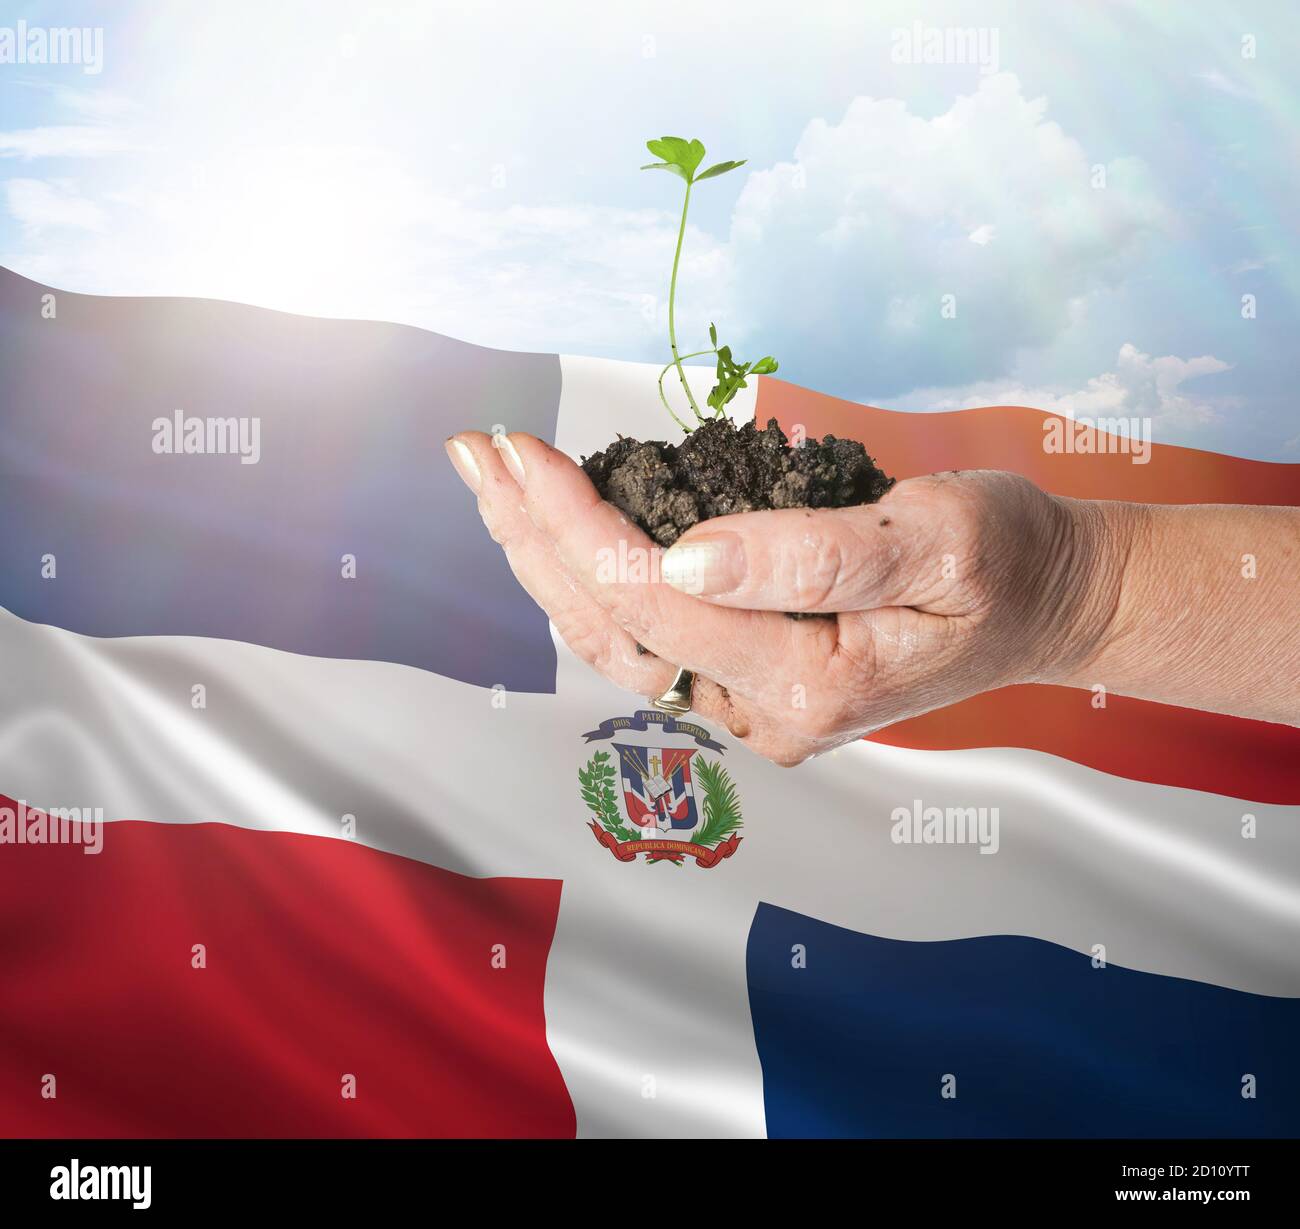 República Dominicana crecimiento y nuevo comienzo. Concepto de energía renovable verde y ecología. Mano sosteniendo planta joven. Foto de stock